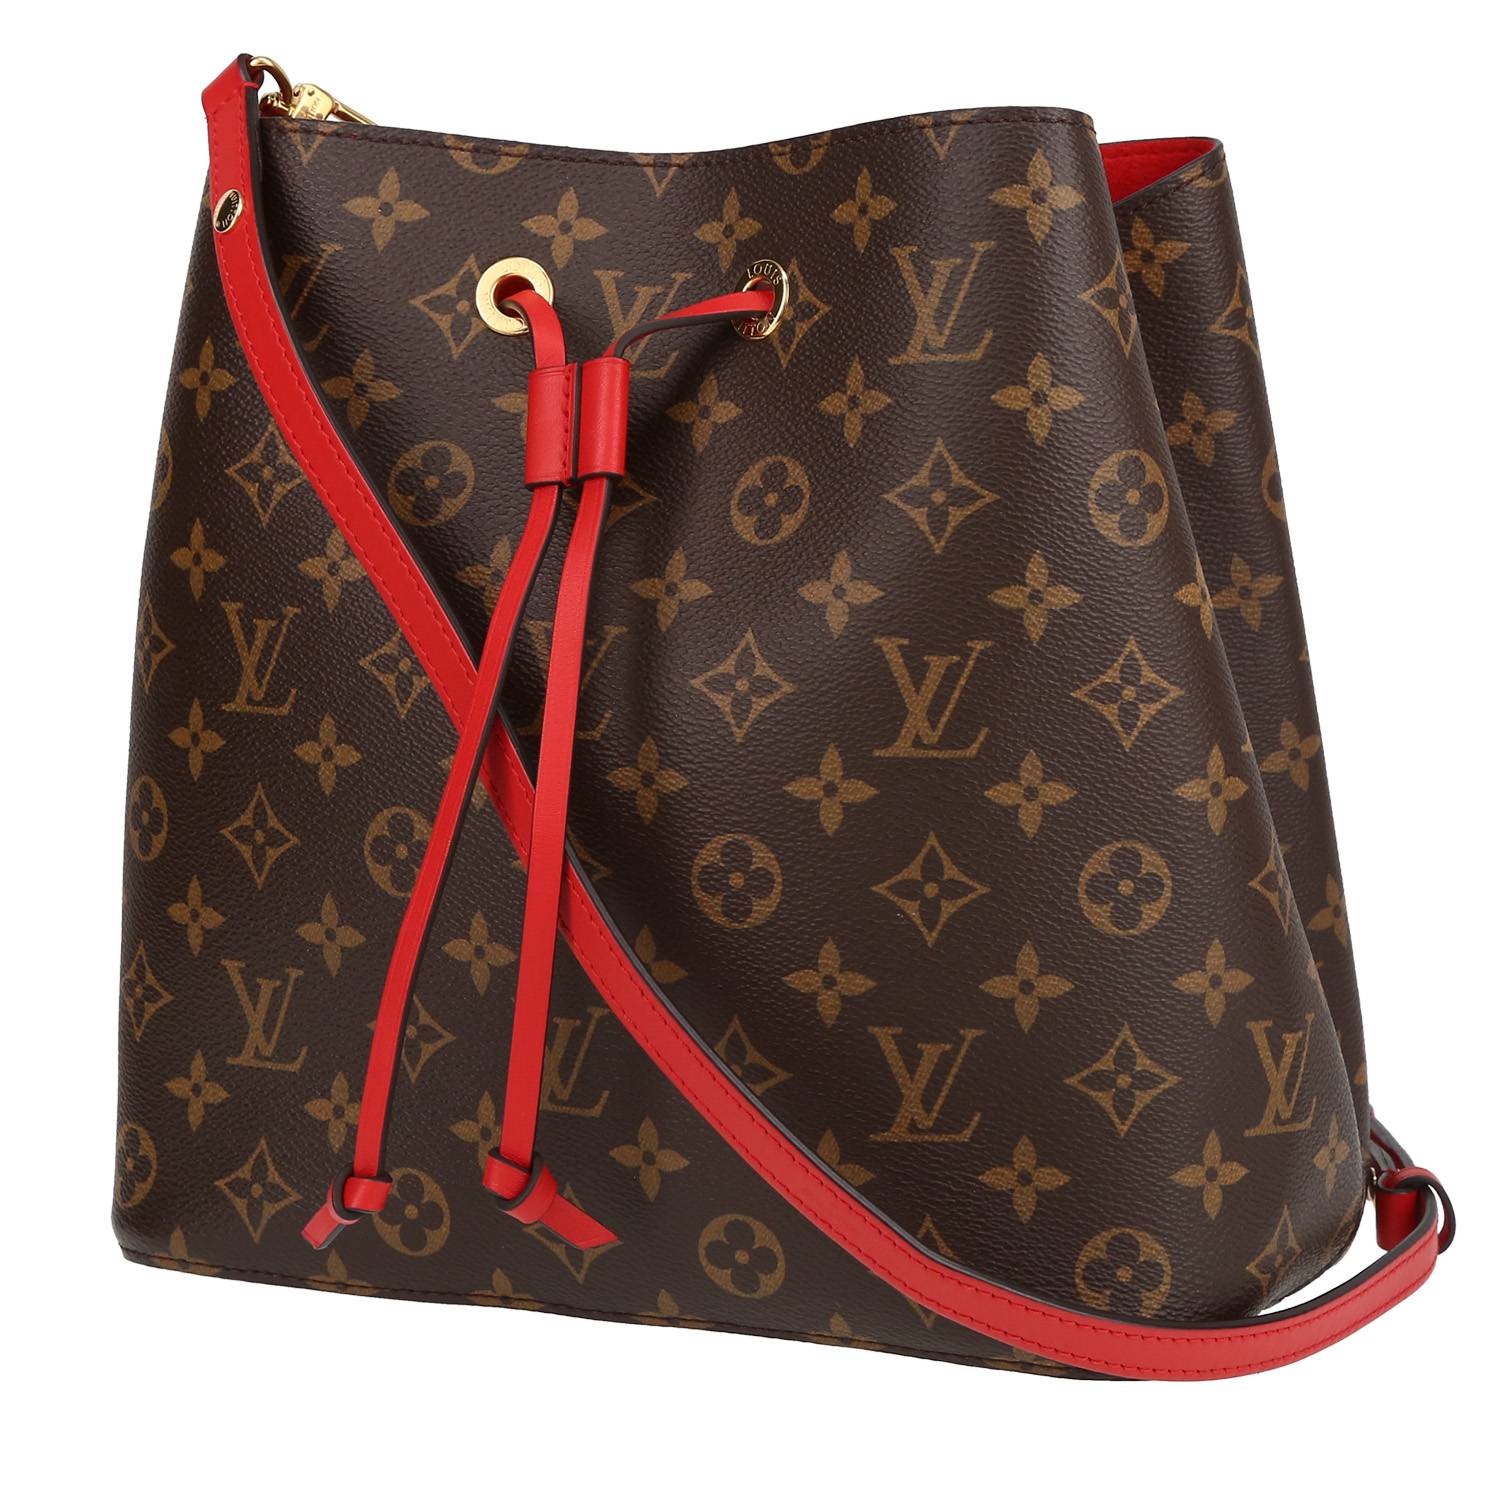 Ver todas las bolsas Louis Vuitton New Wave